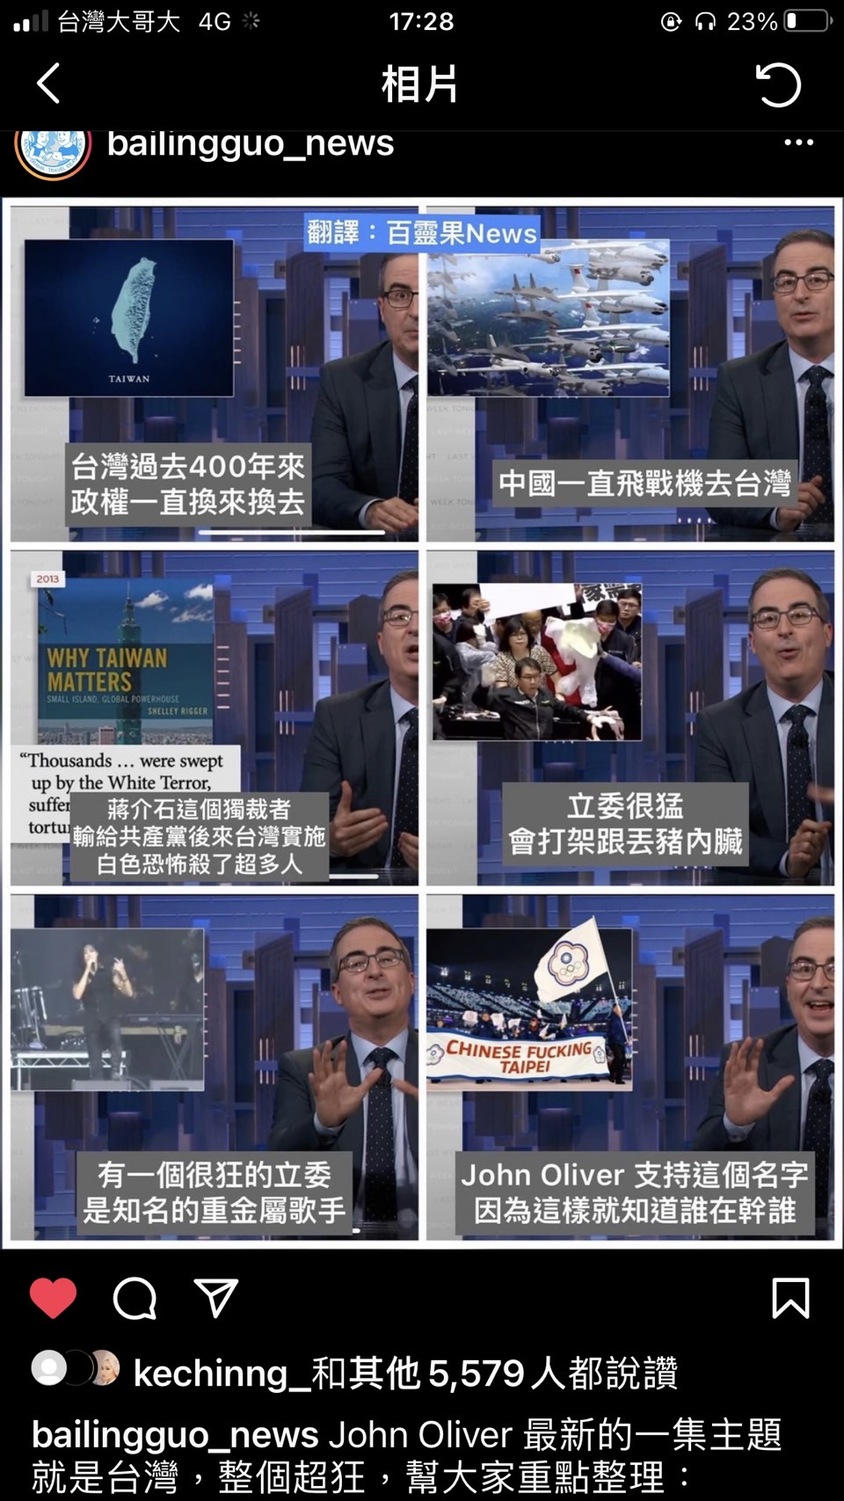 圖 美國脫口秀介紹台灣 懶人包6圖8重點「神